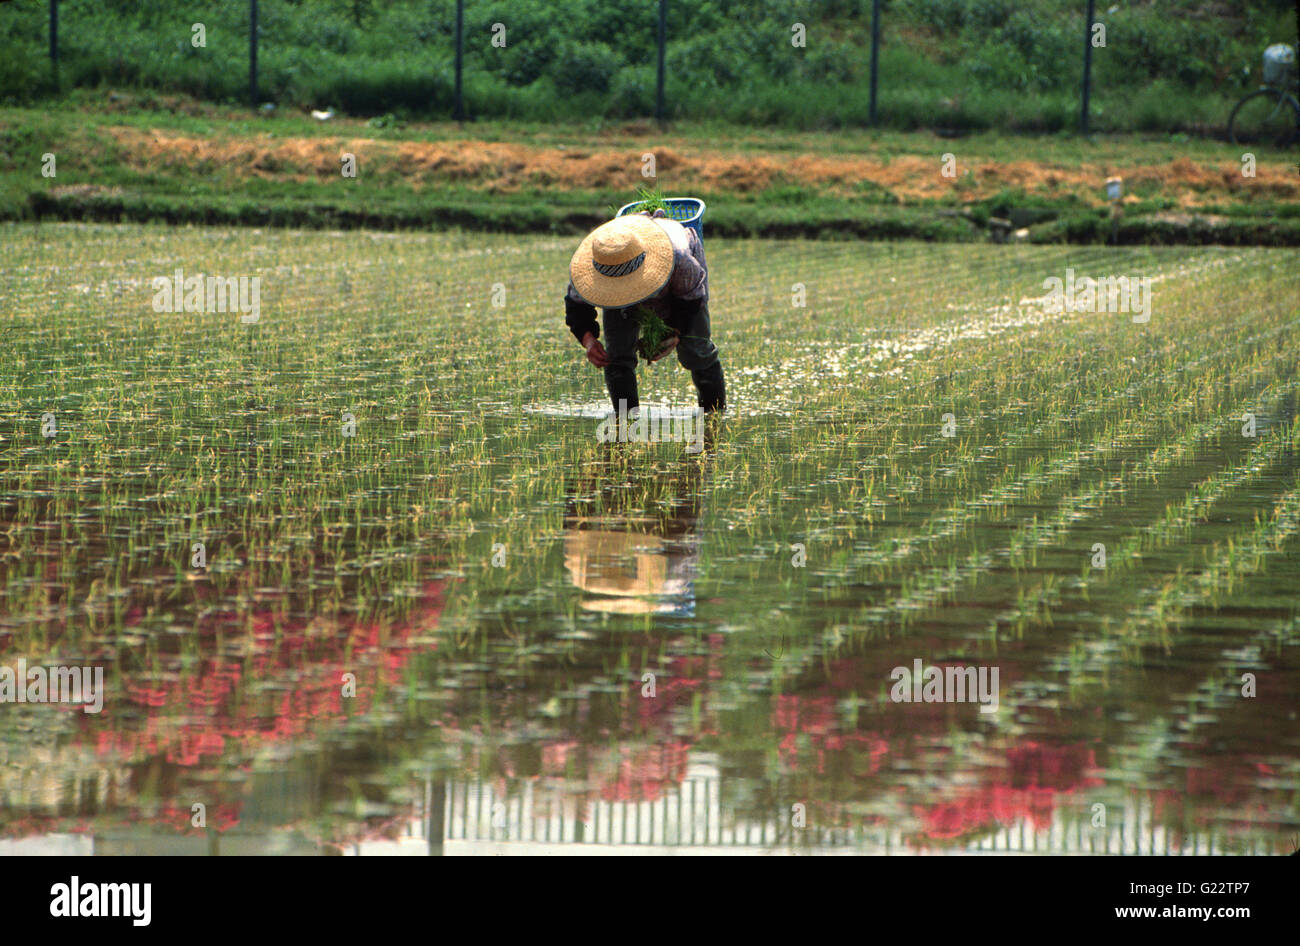 Le Japon, l'agriculteur de riz, semoir, champ de riz Banque D'Images